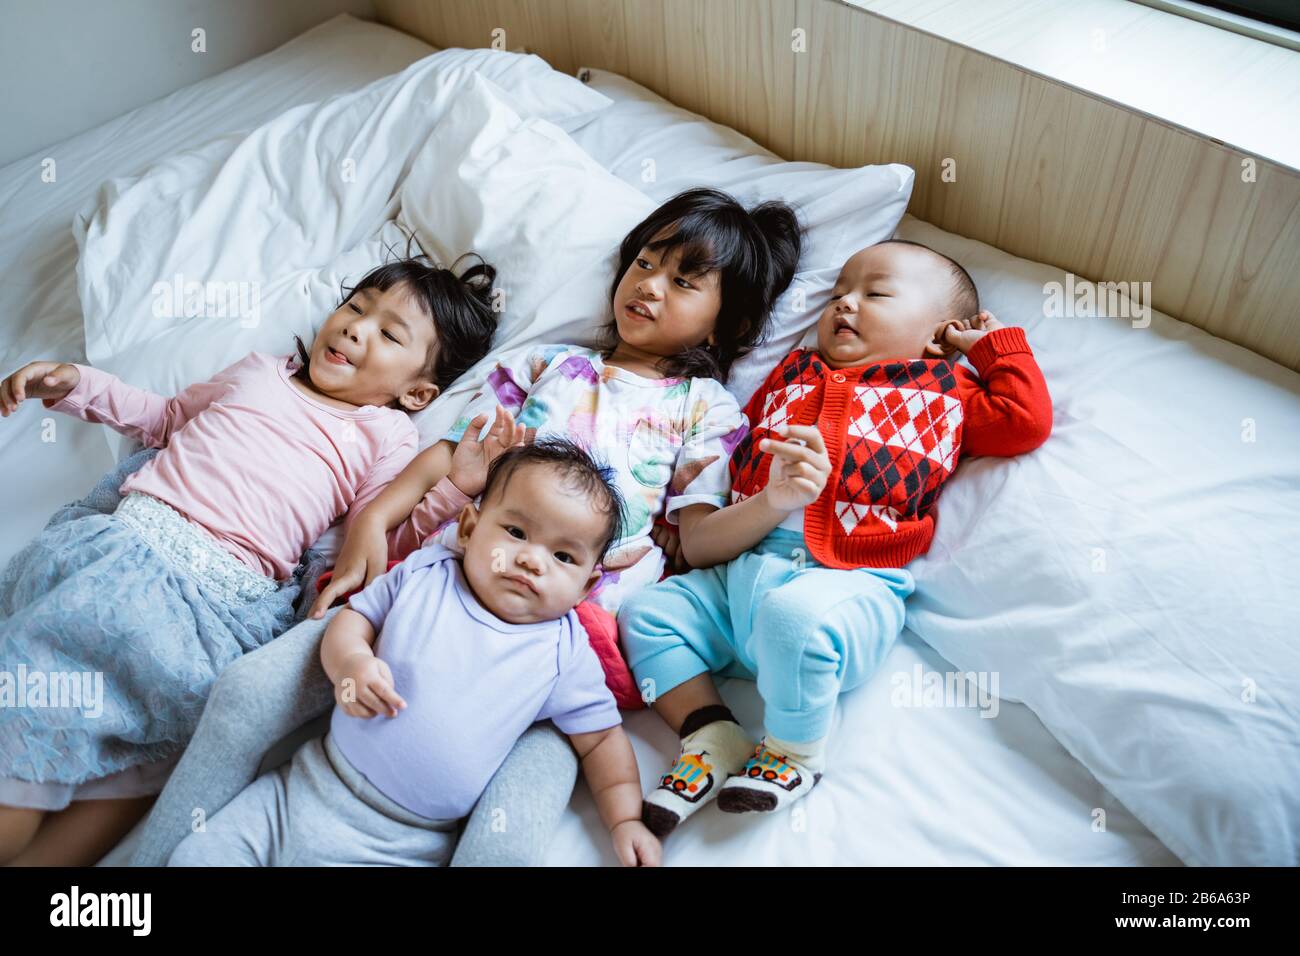 Vier asiatische Kinder spielen gern und scherzten im Bett, wenn sie aufwachen Stockfoto